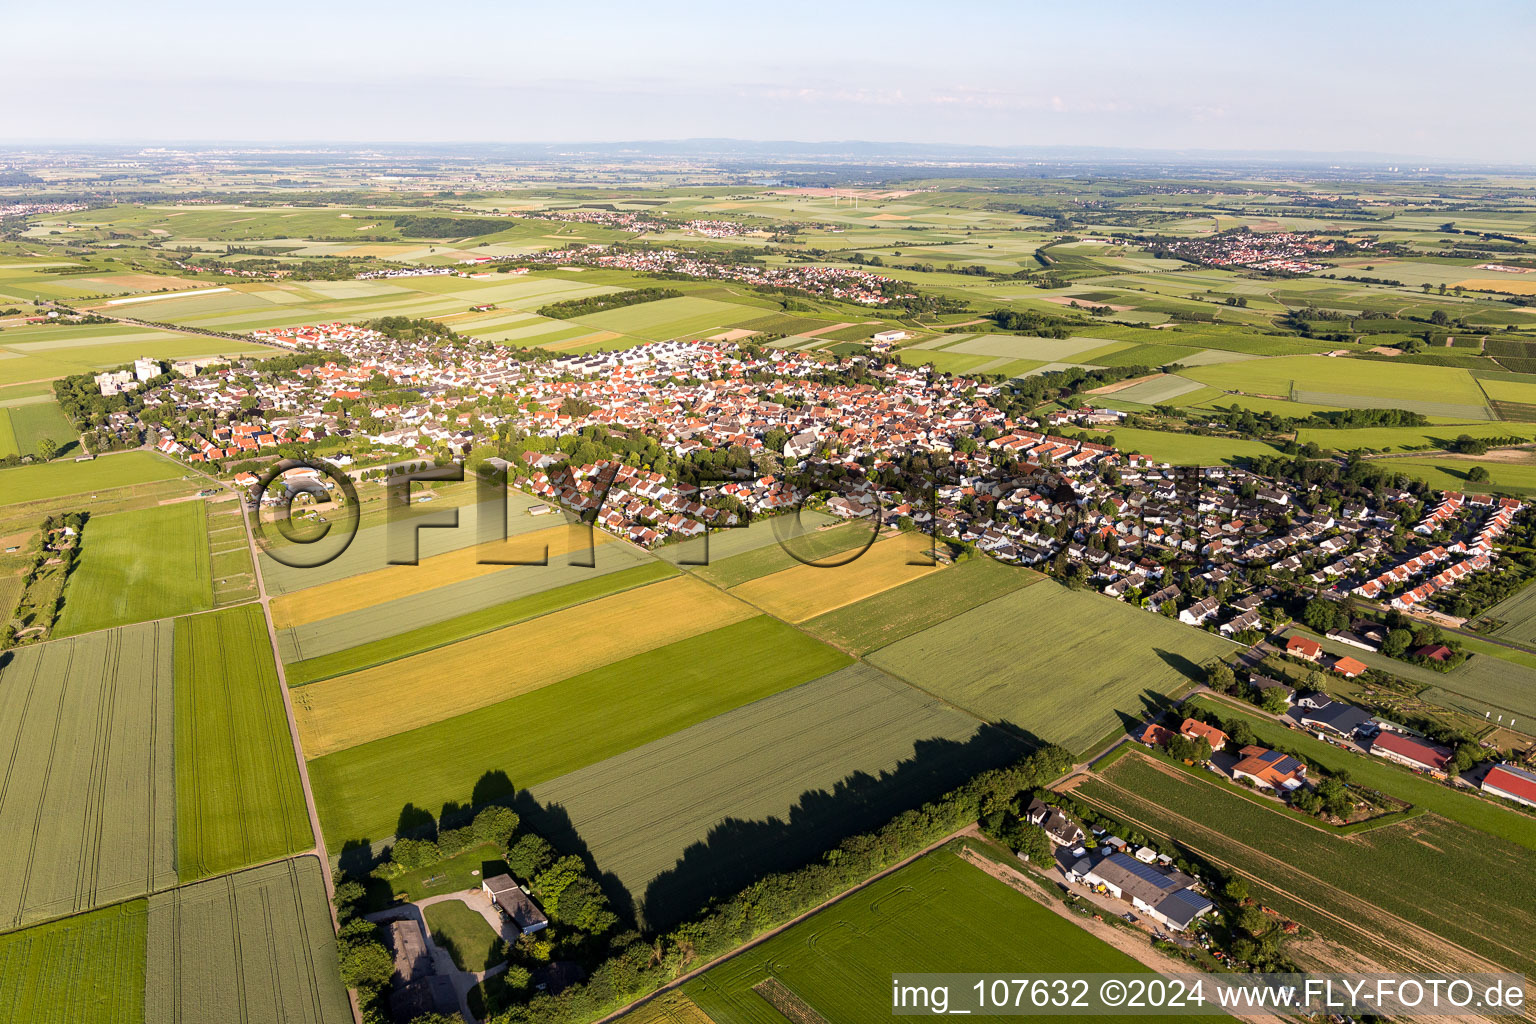 Vue aérienne de Vue de la commune en bordure des champs agricoles et des surfaces utilisables-Ebersheim à le quartier Ebersheim in Mainz dans le département Rhénanie-Palatinat, Allemagne